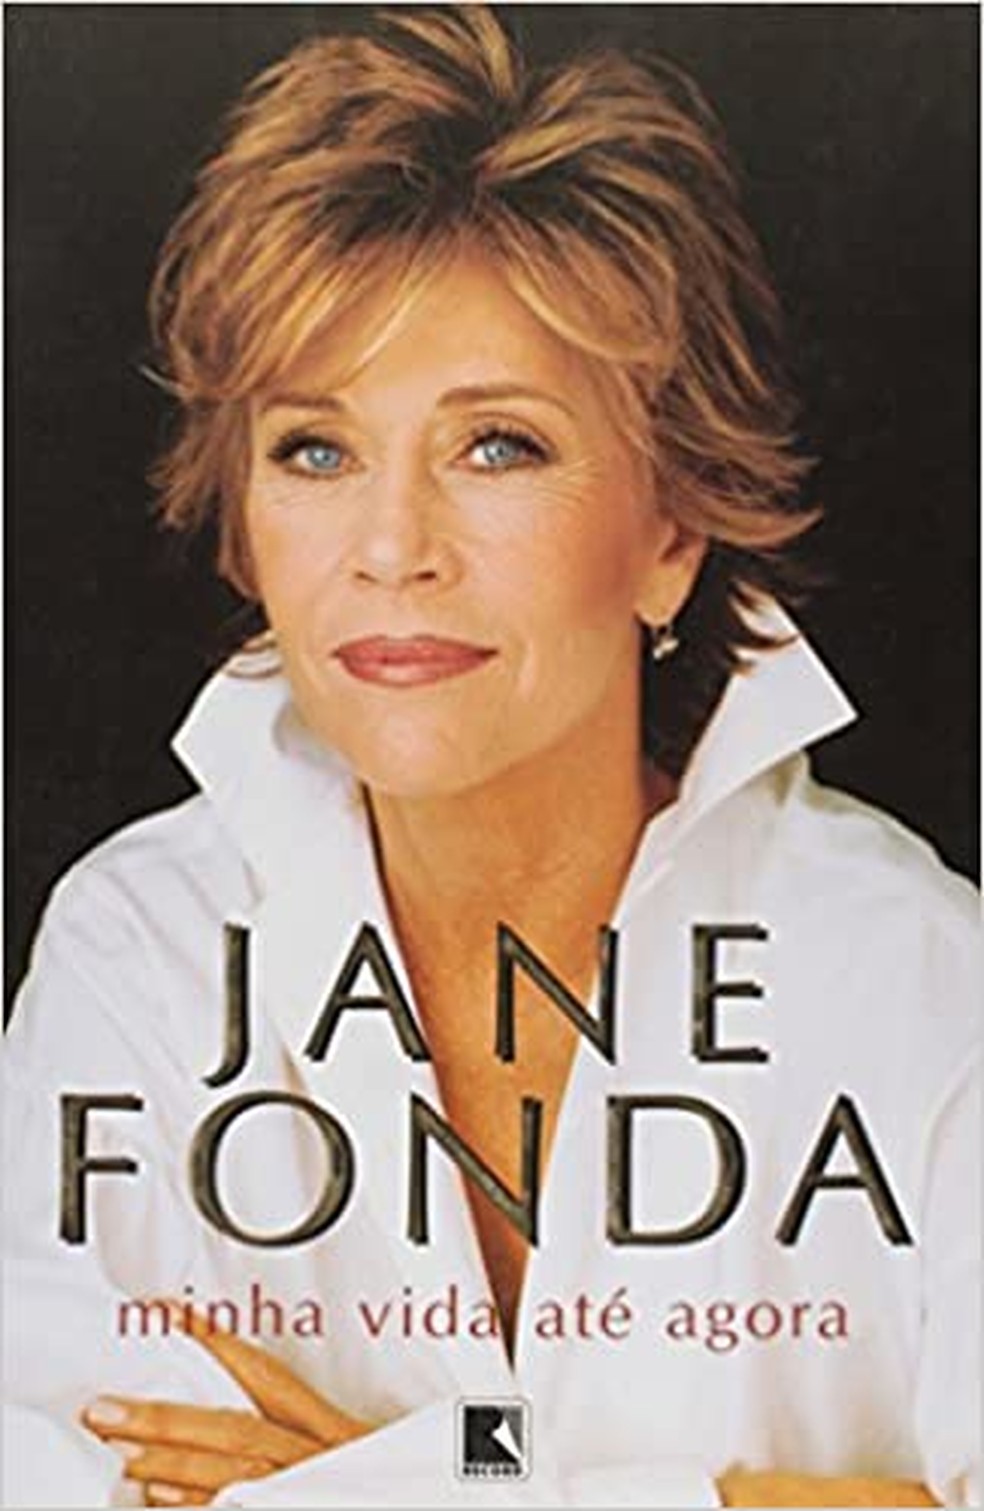 Livro de Jane Fonda — Foto: Divulgação